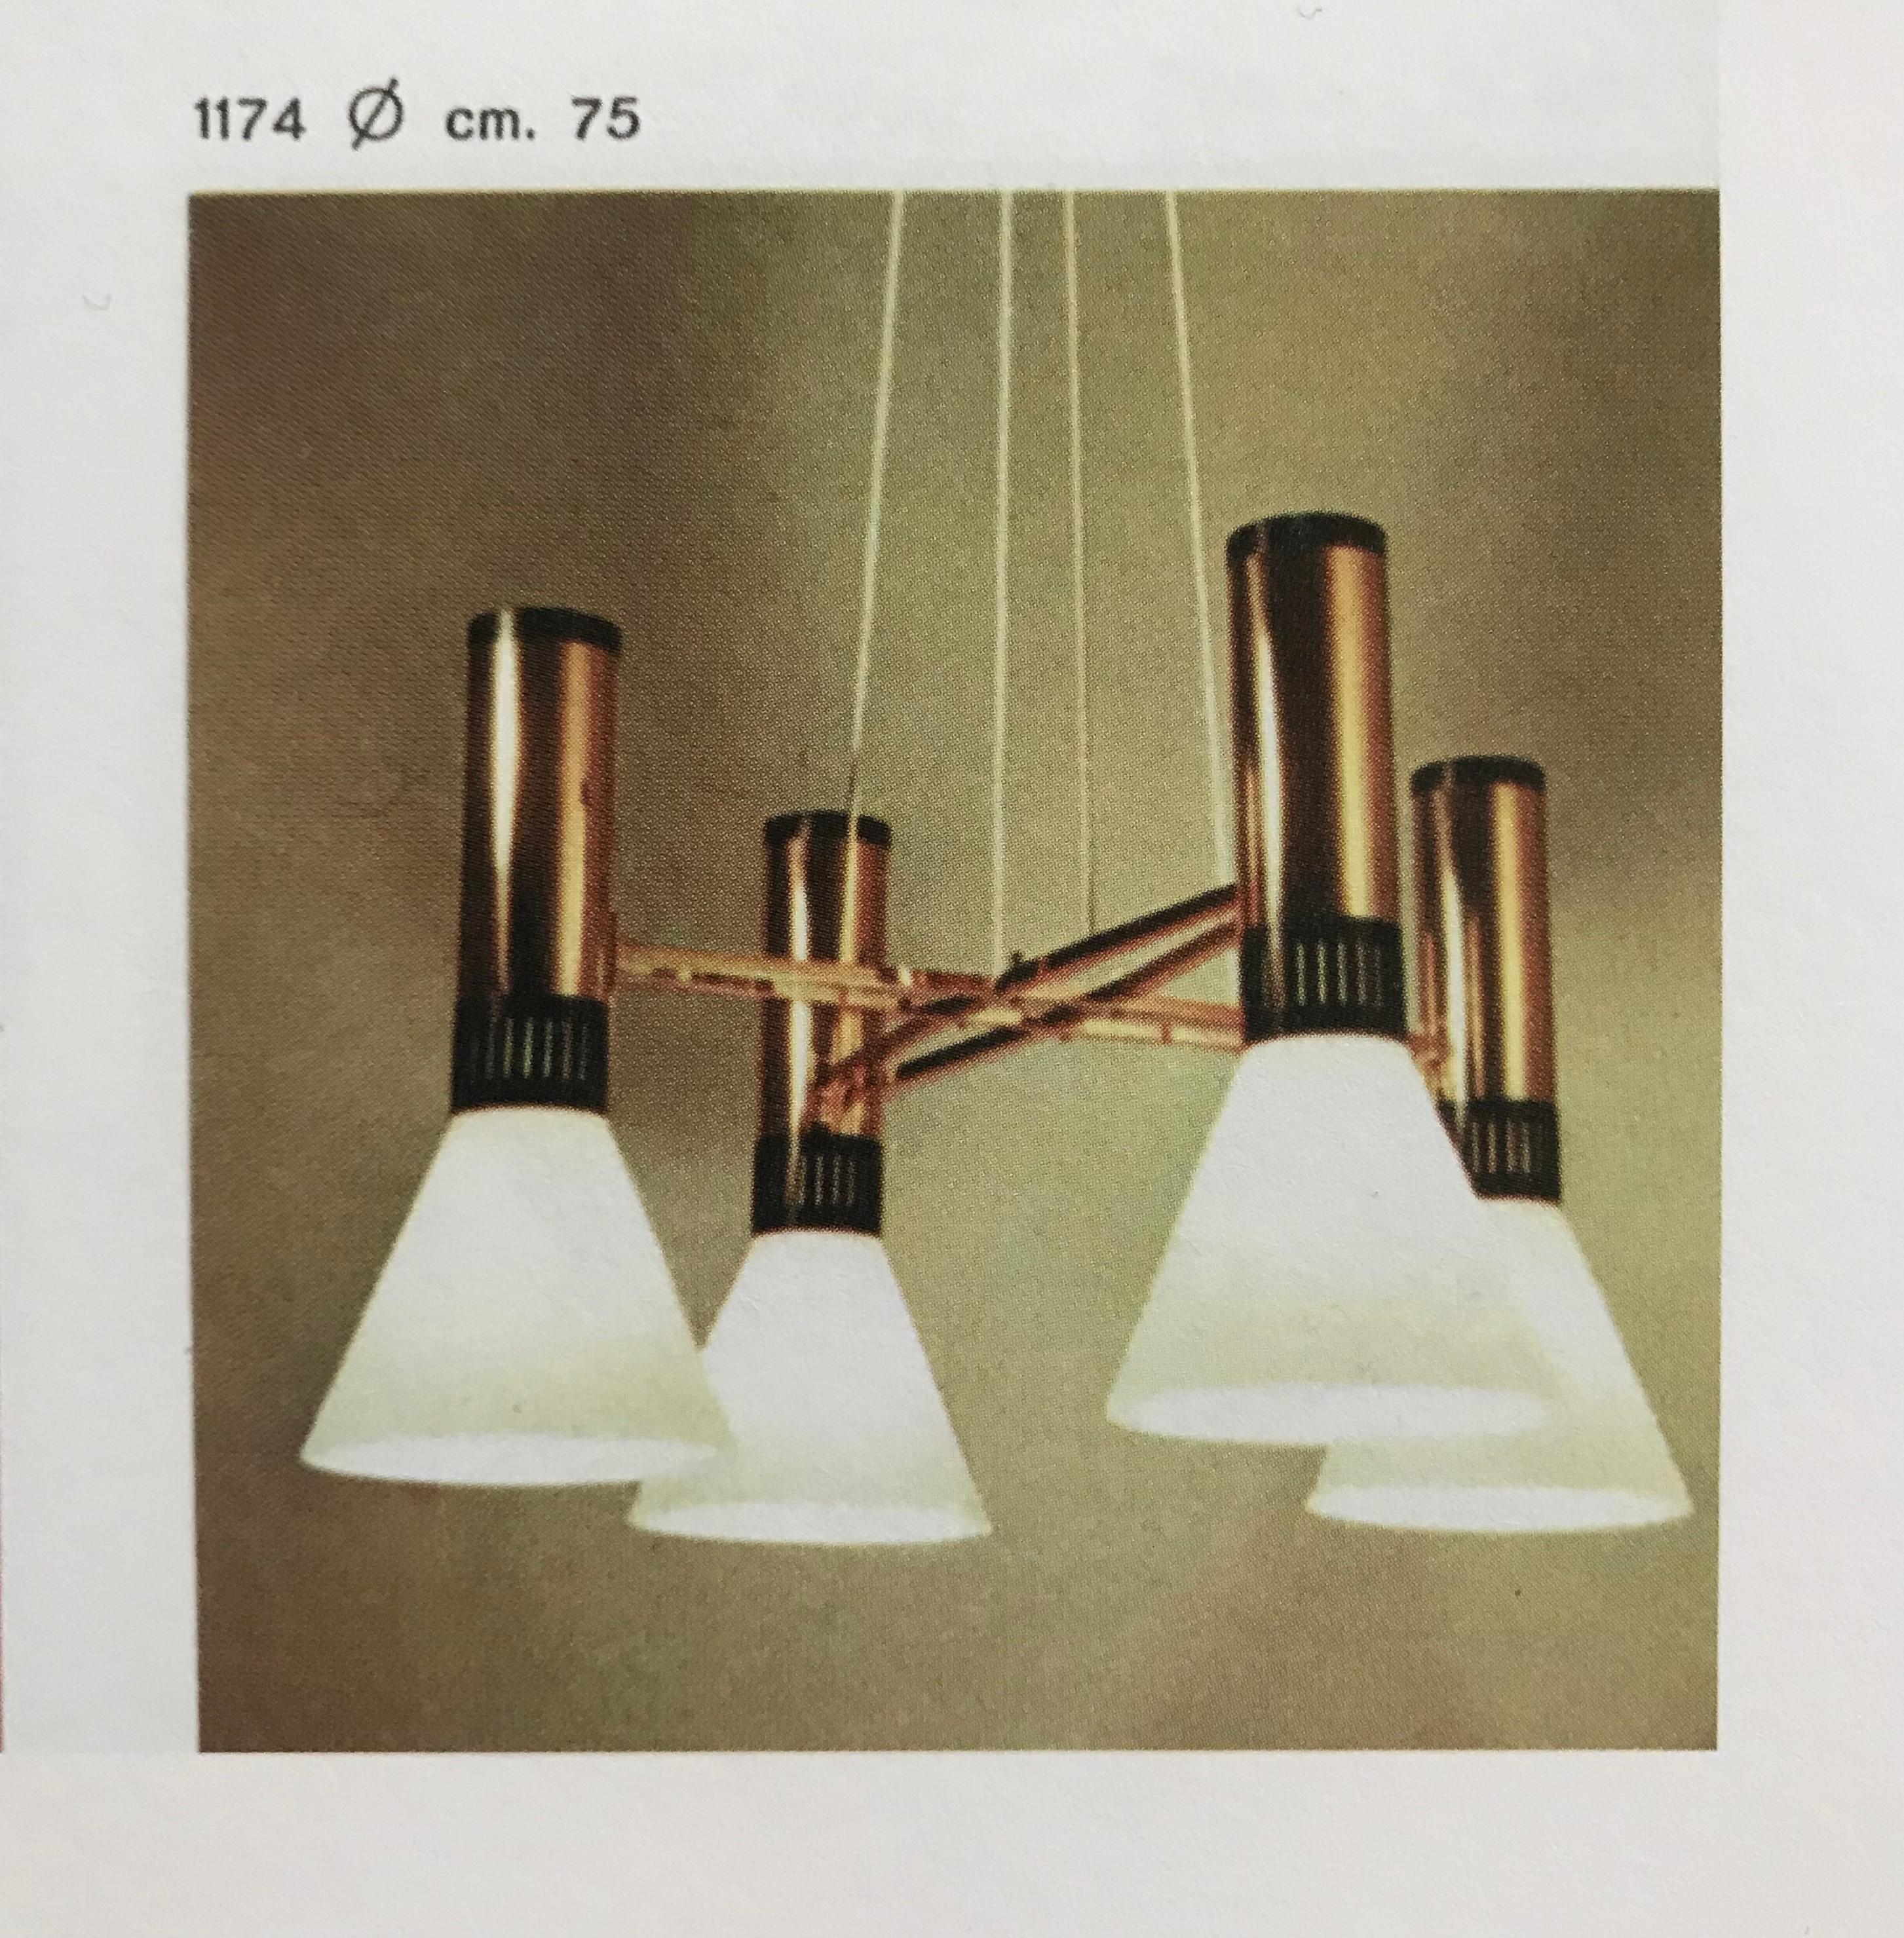 Grand lustre à 4 cônes Stilnovo modèle #1174 des années 1950. Un design italien emblématique des années 1950 composé de 4 grands cônes en verre dépoli mat 